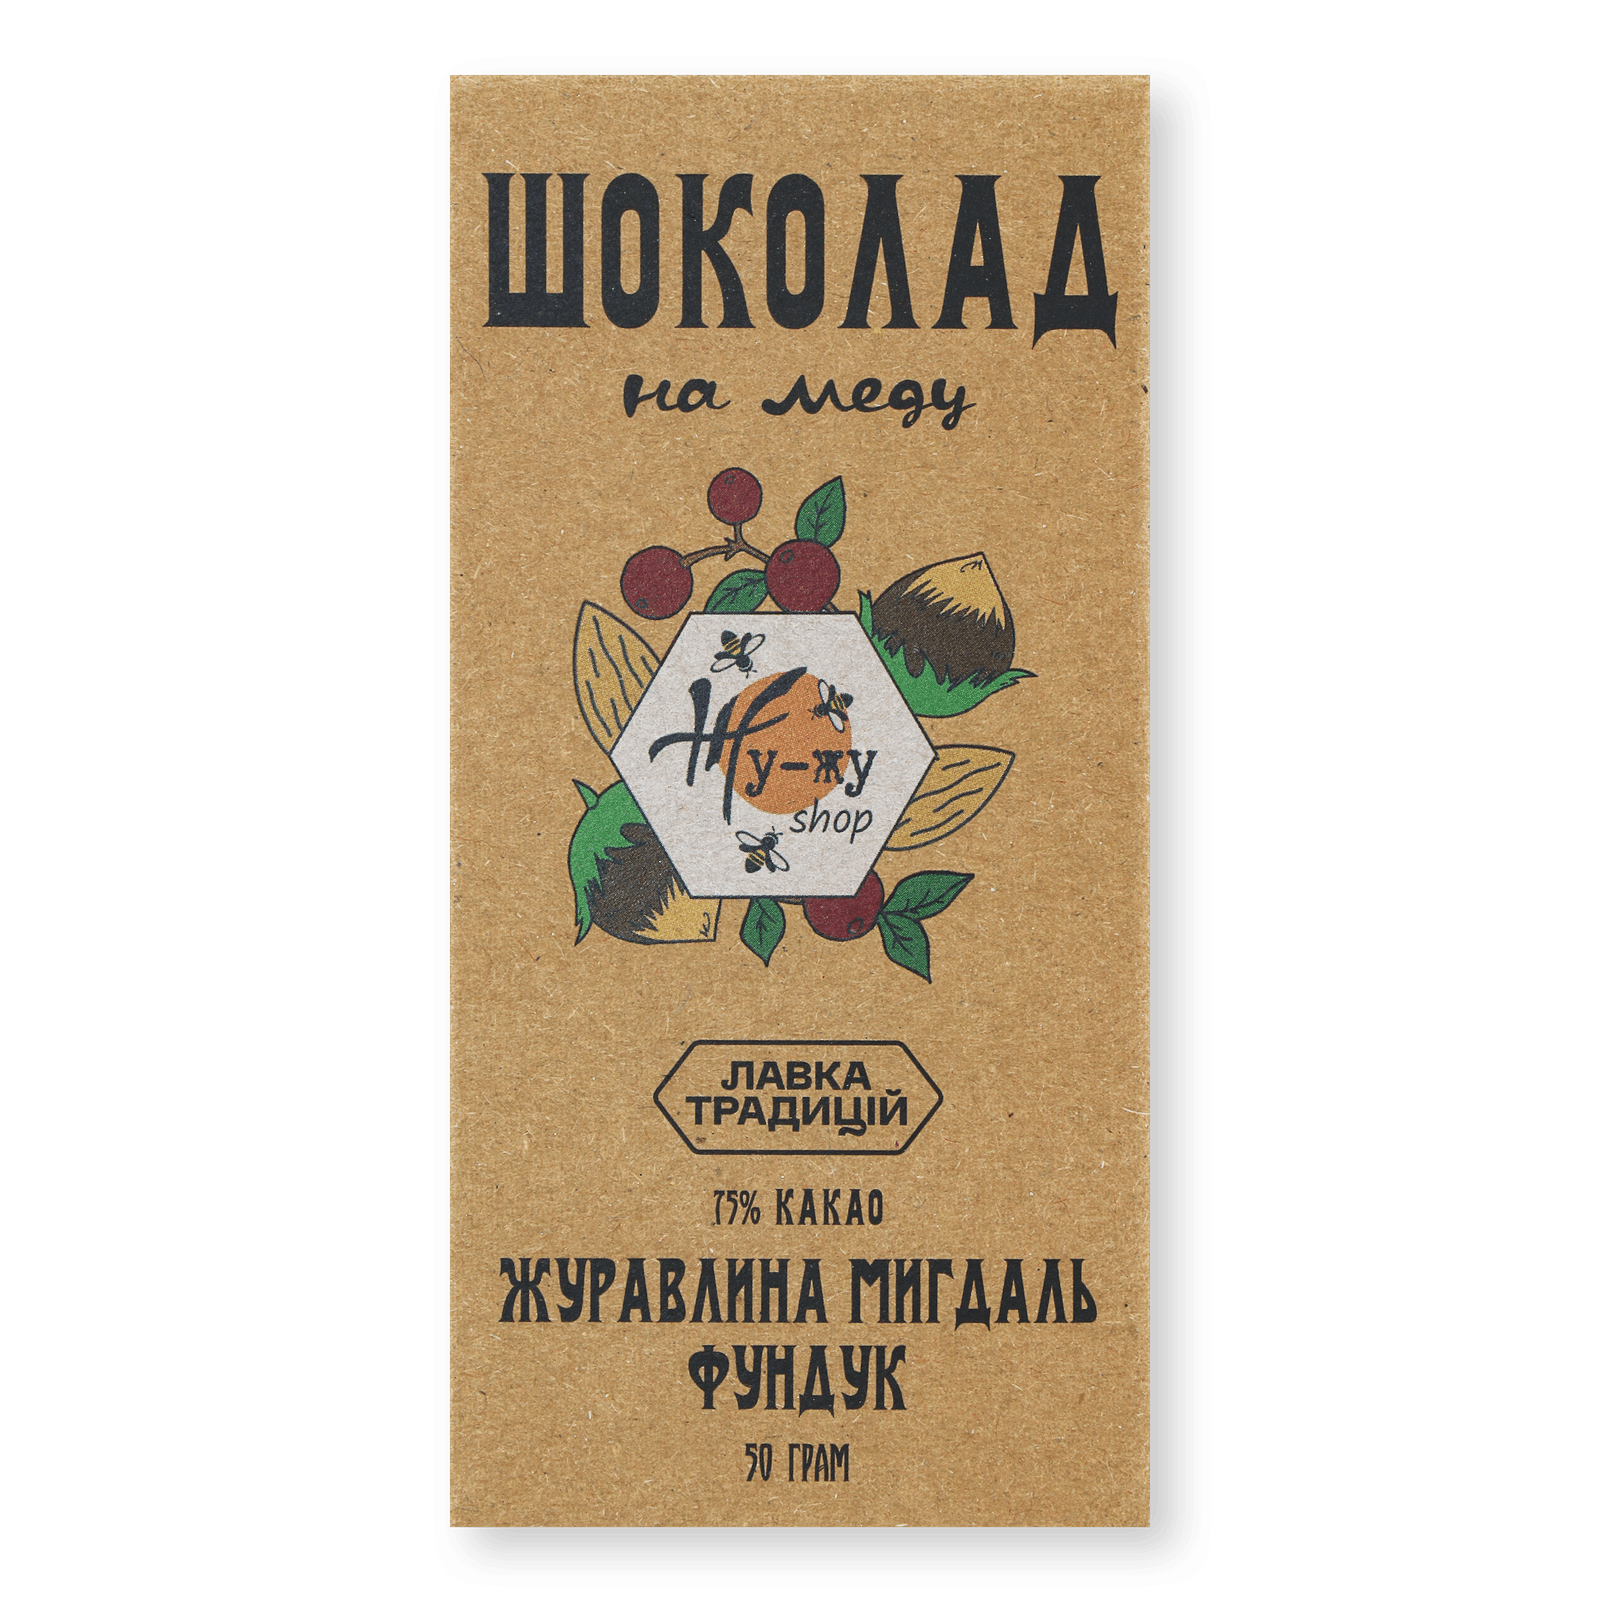 Шоколад «Лавка Традицій» «Жу-жу shop на меду» журавлина-мигдаль-фундук - 1